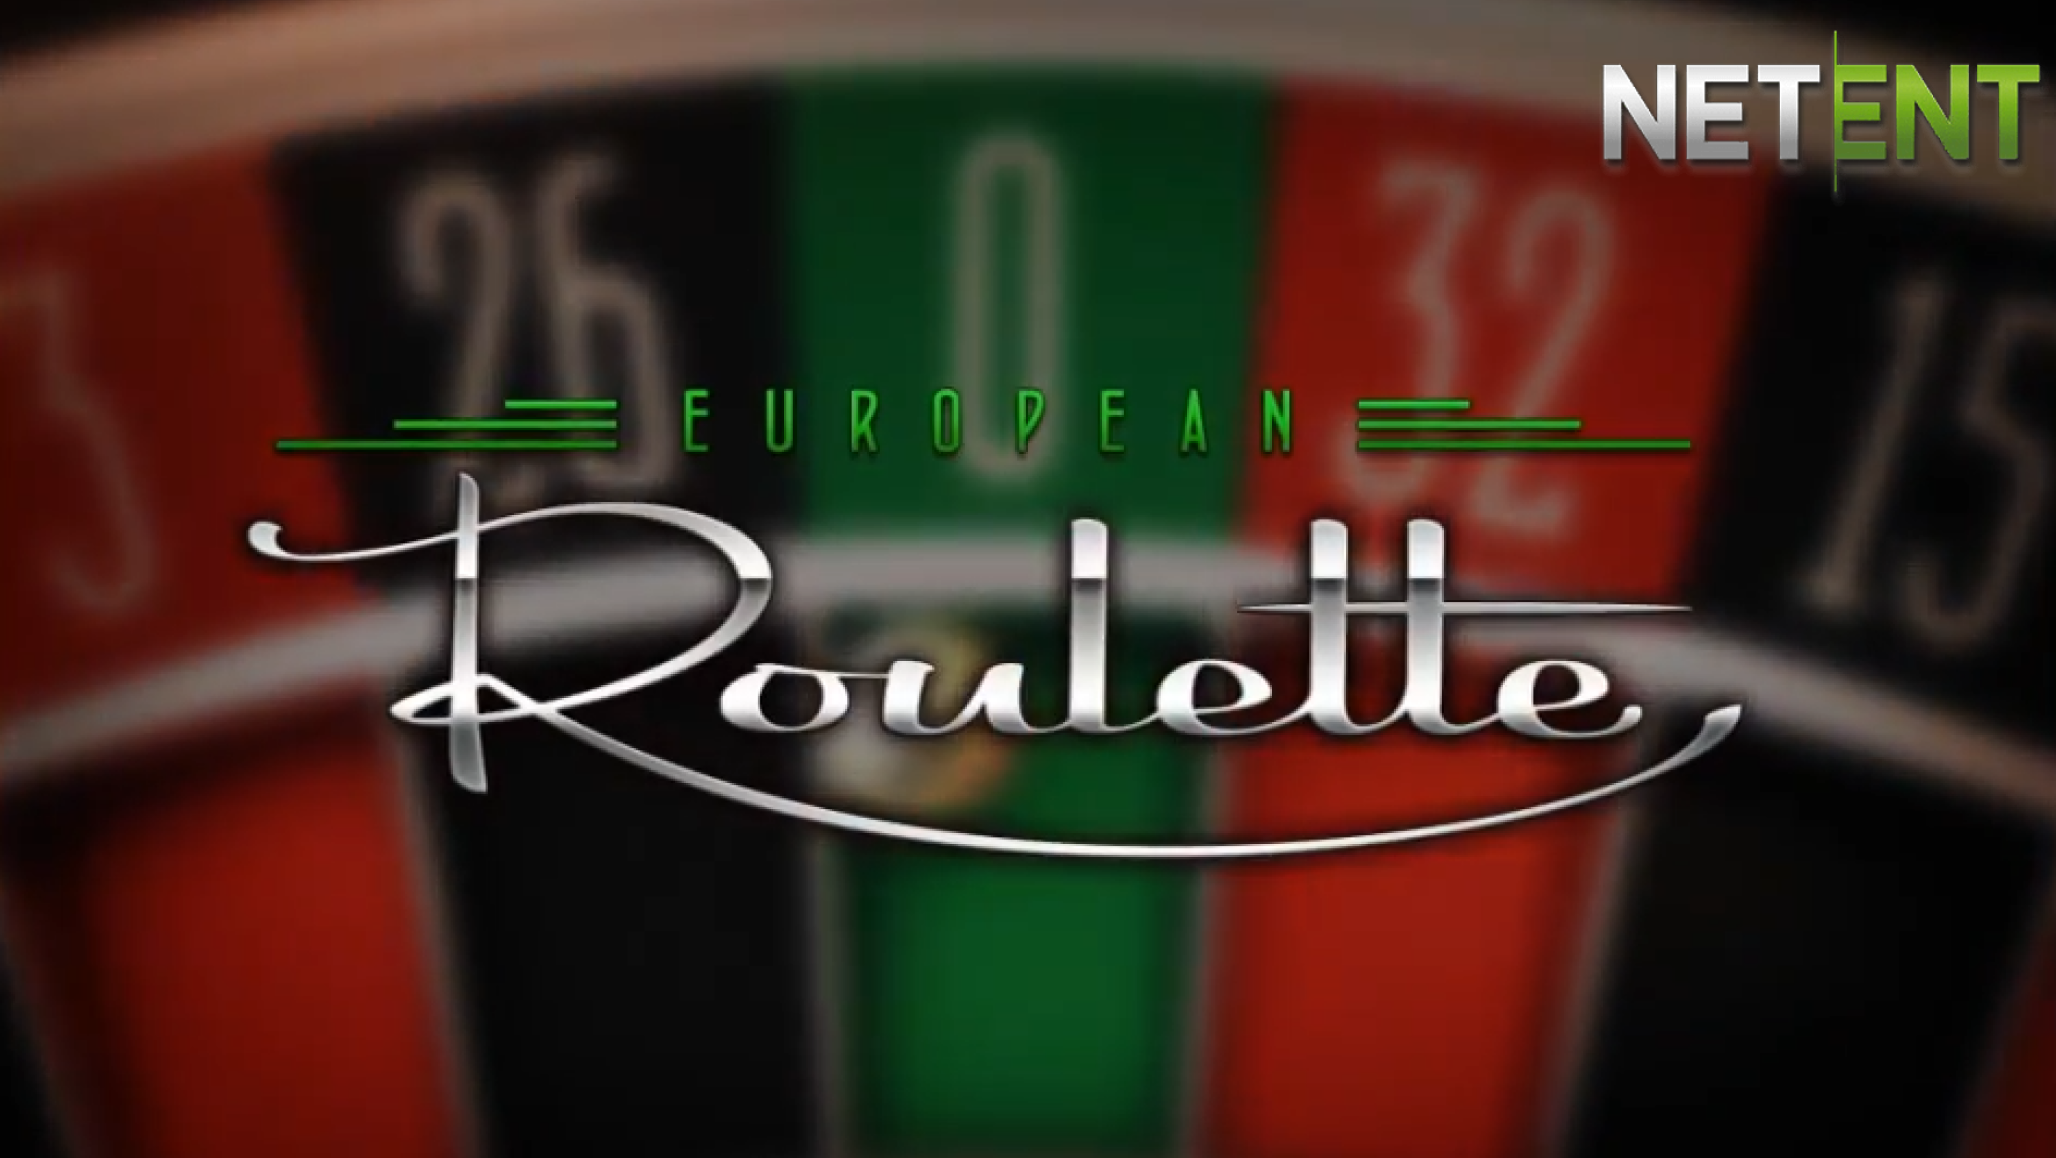 NetEnt's European Roulette